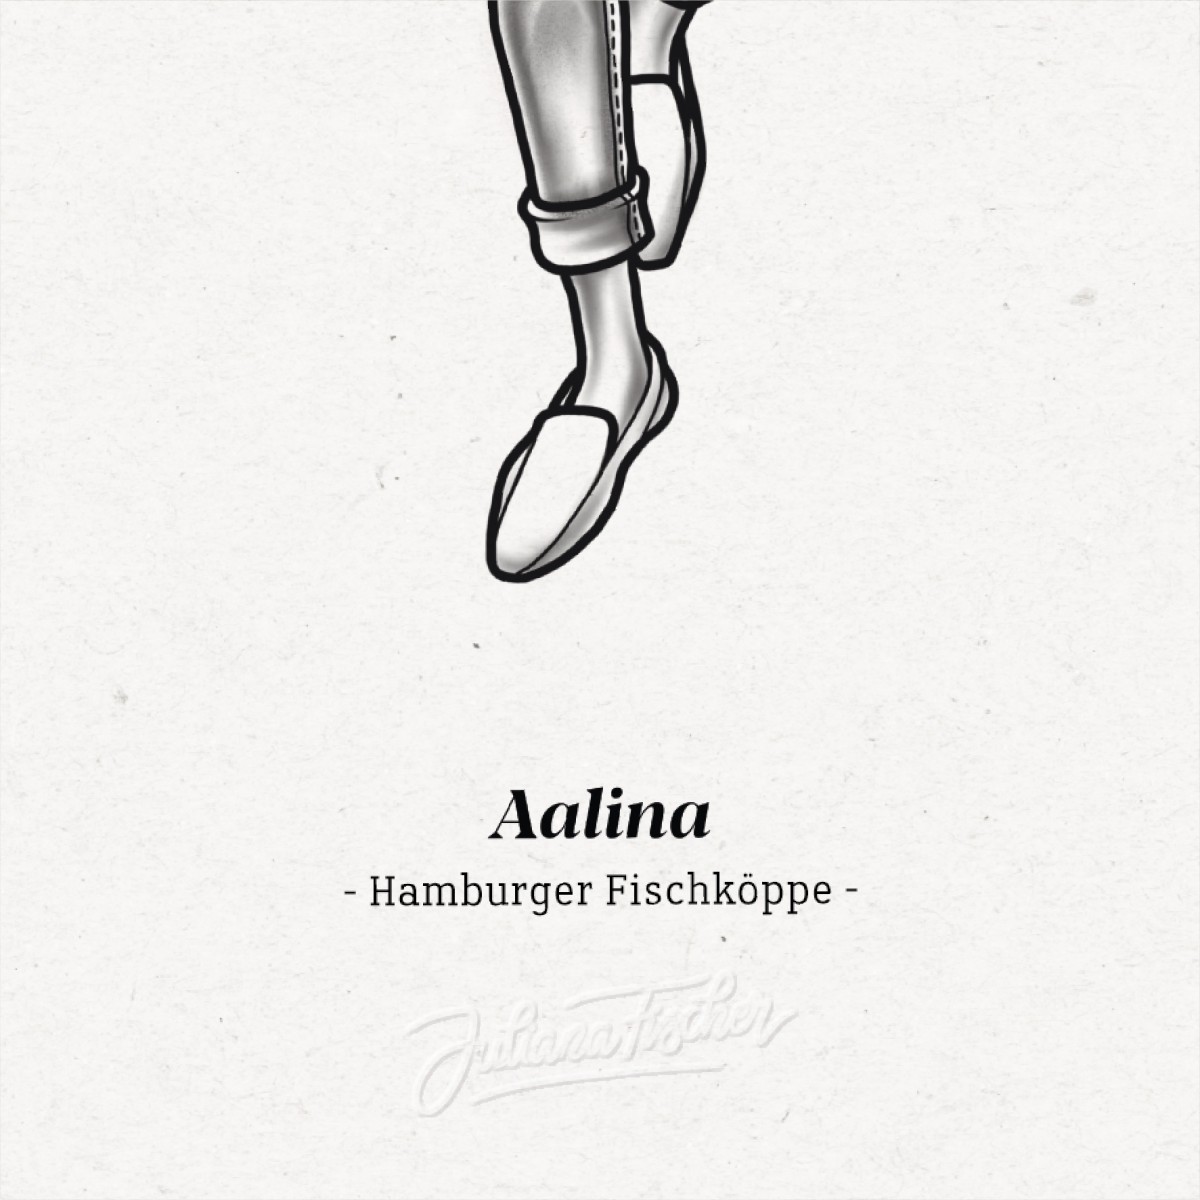 Juliana Fischer - Hamburger Fischköppe - AALINA